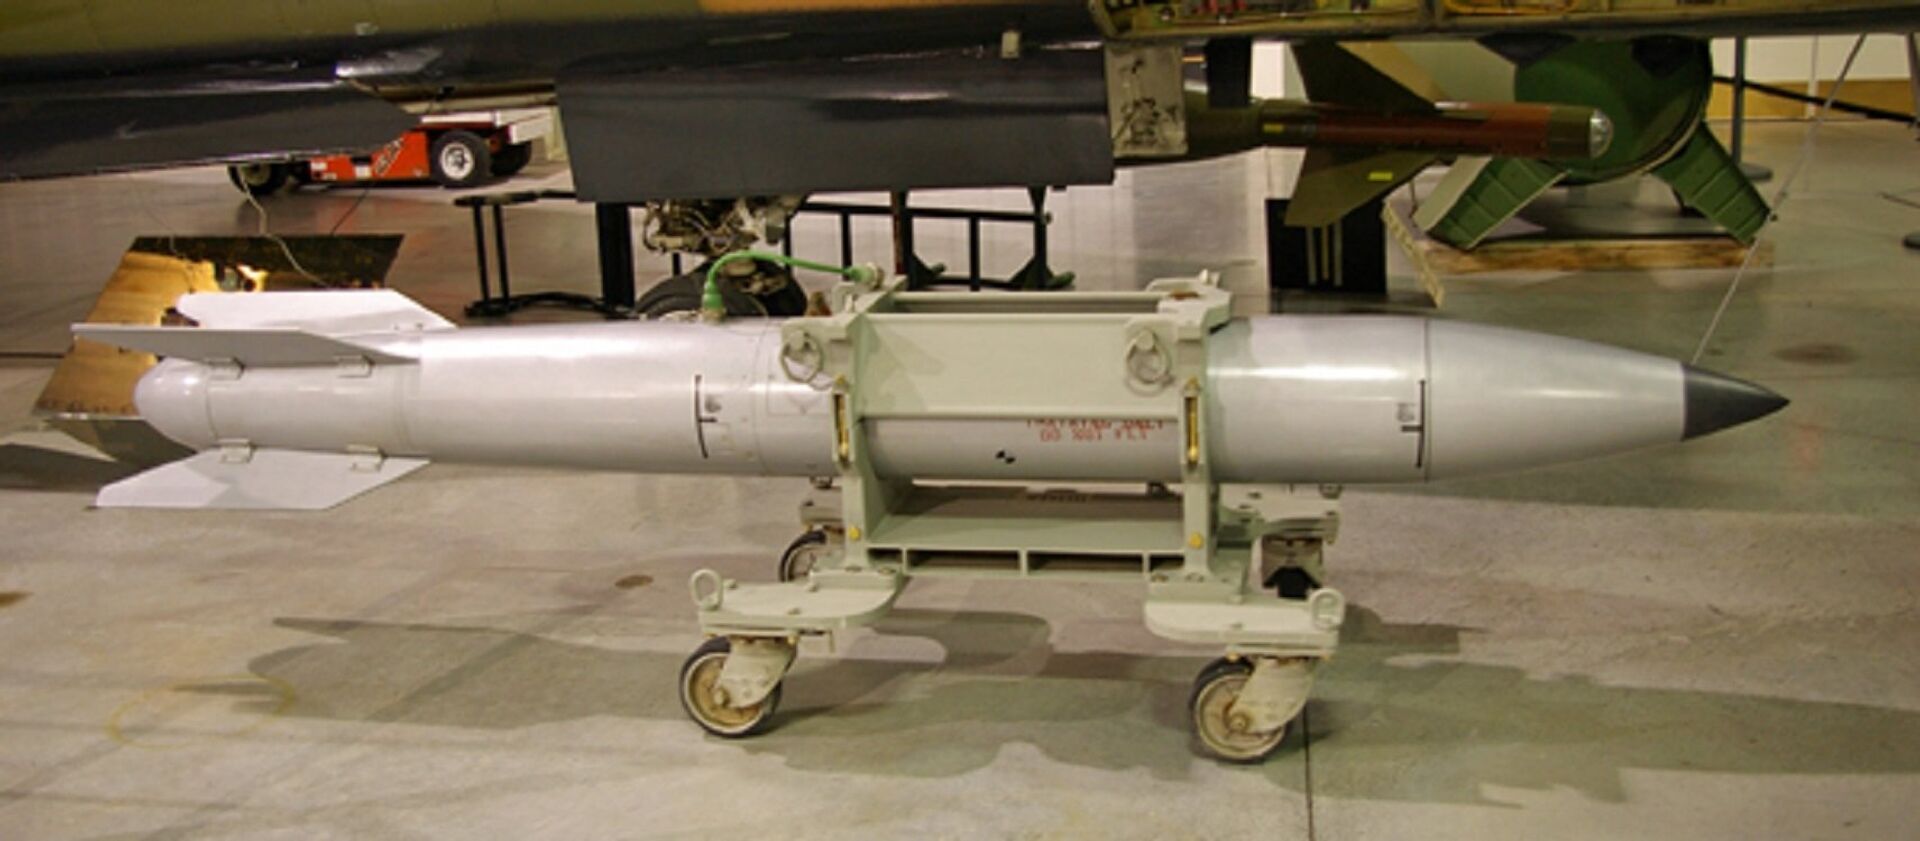 EUA reduziram quantidade de bombas termonucleares na Europa, sugere relatório - Sputnik Brasil, 1920, 20.03.2021